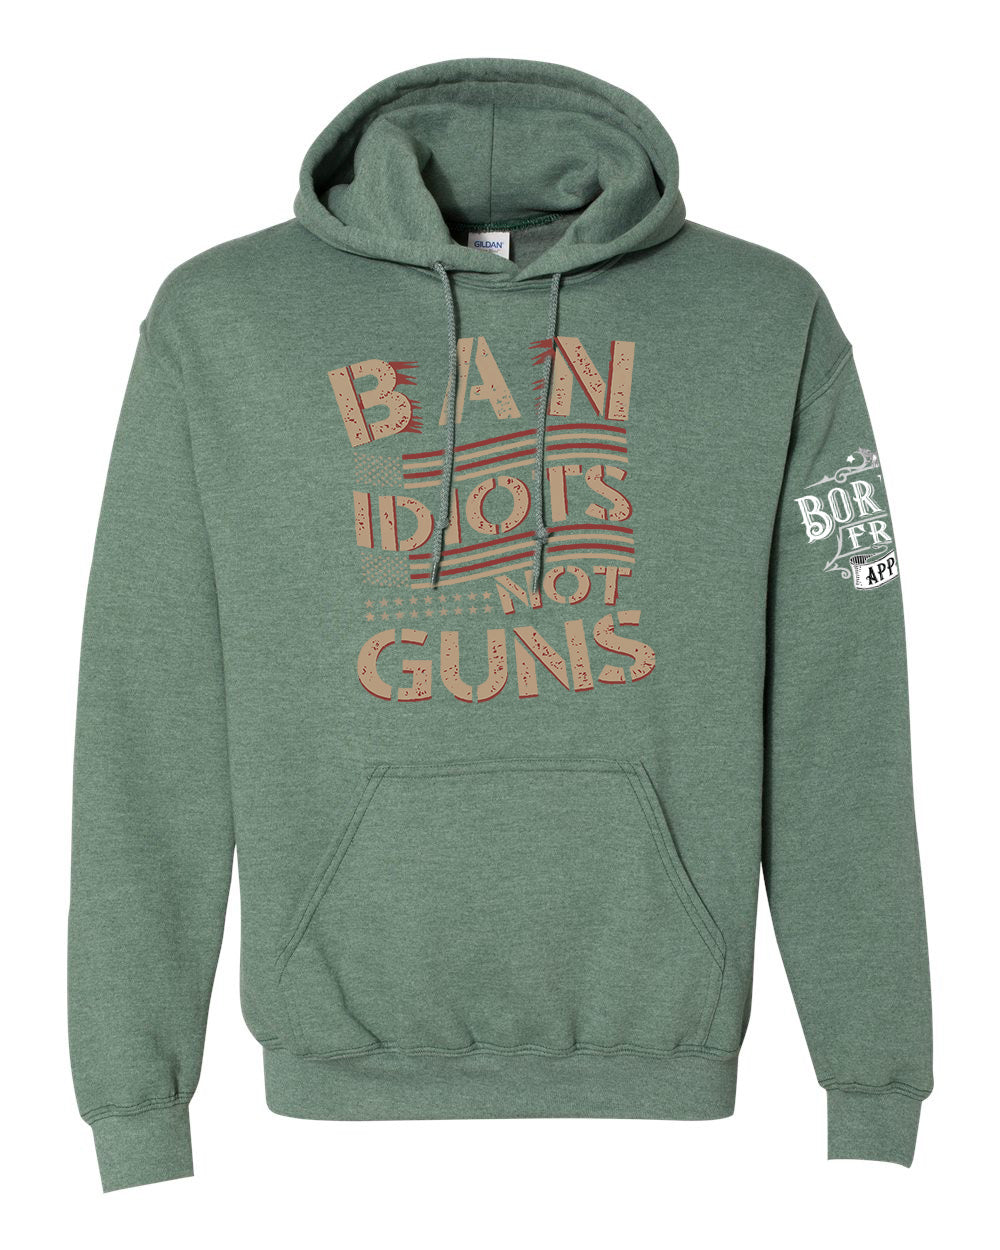 Ban Idiots Not Guns